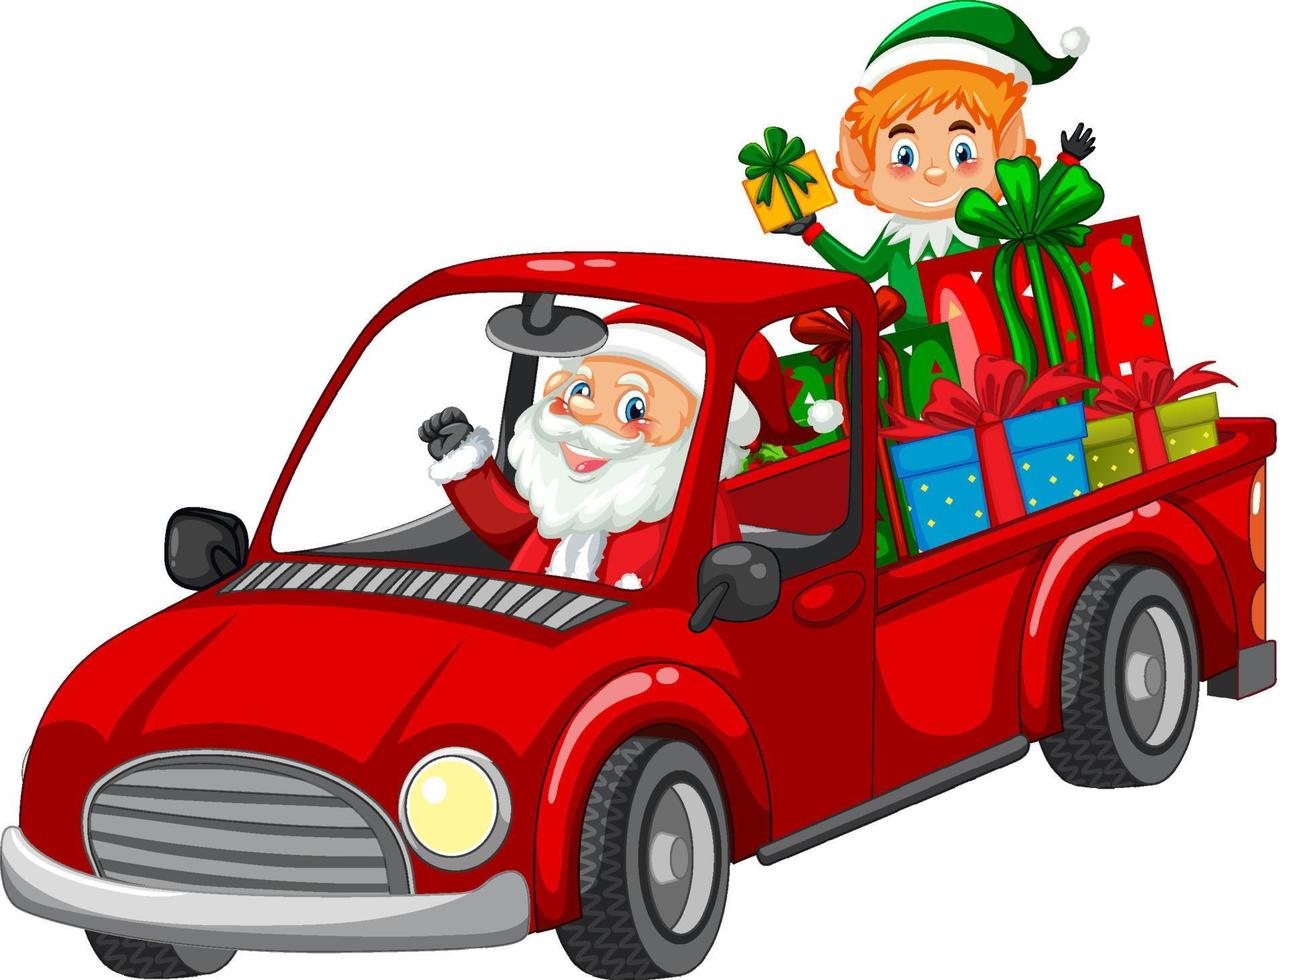 kerstman rijdt in auto om kerstcadeaus te bezorgen vector